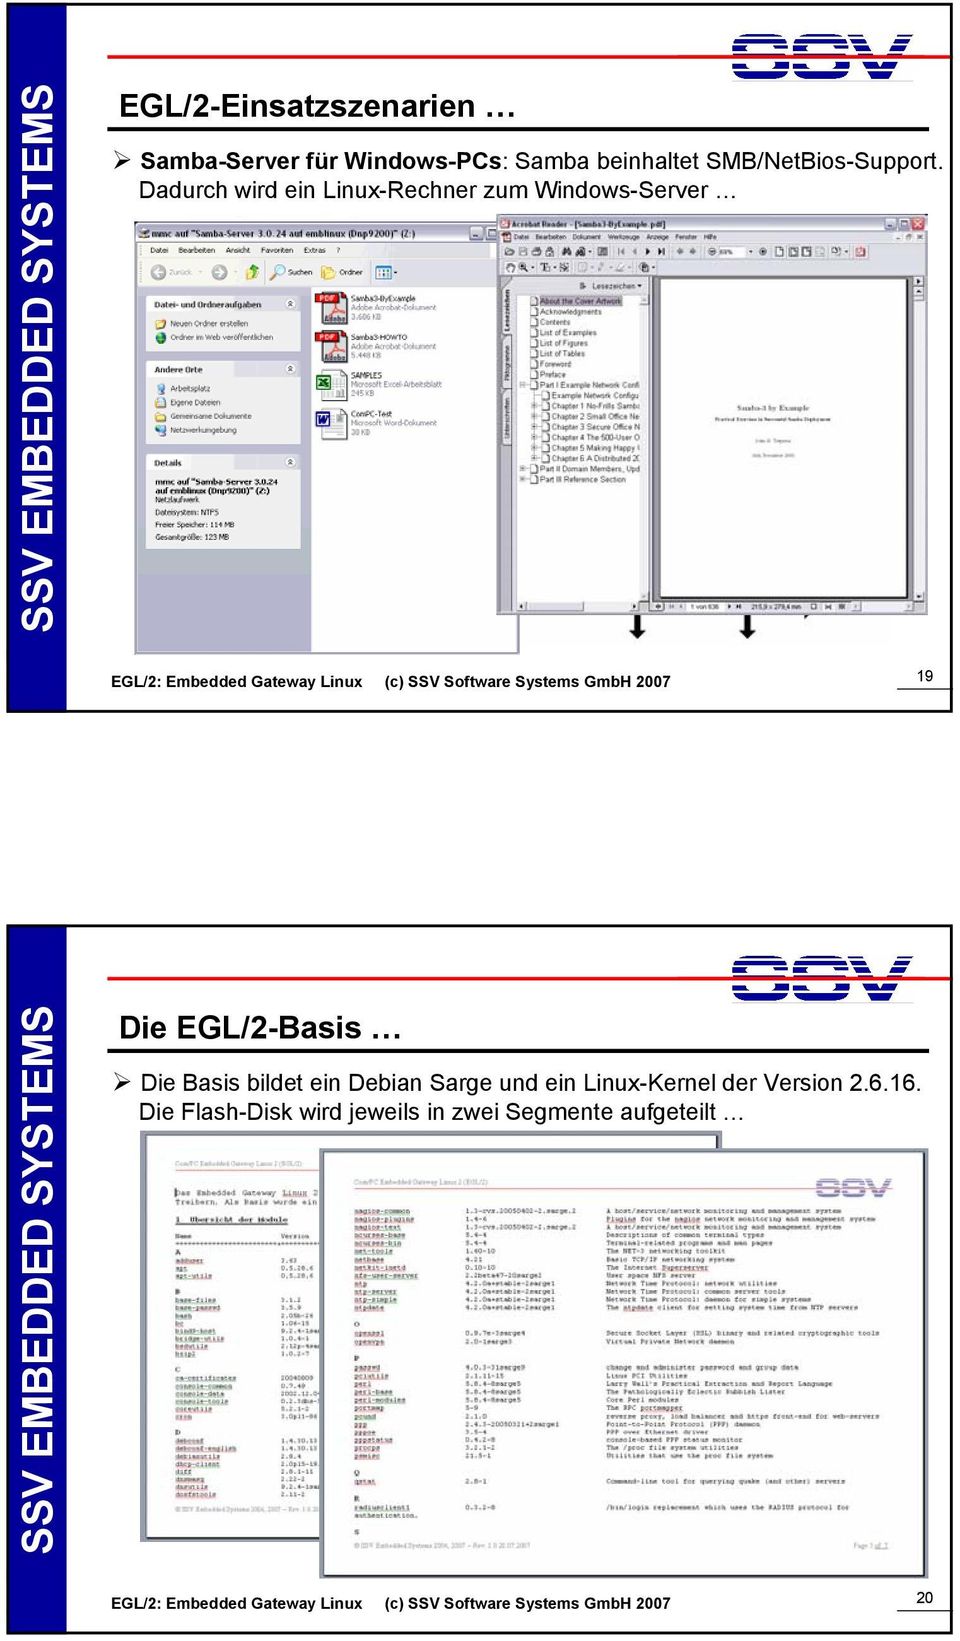 EGL/2-Basis Die Basis bildet ein Debian Sarge und ein Linux-Kernel